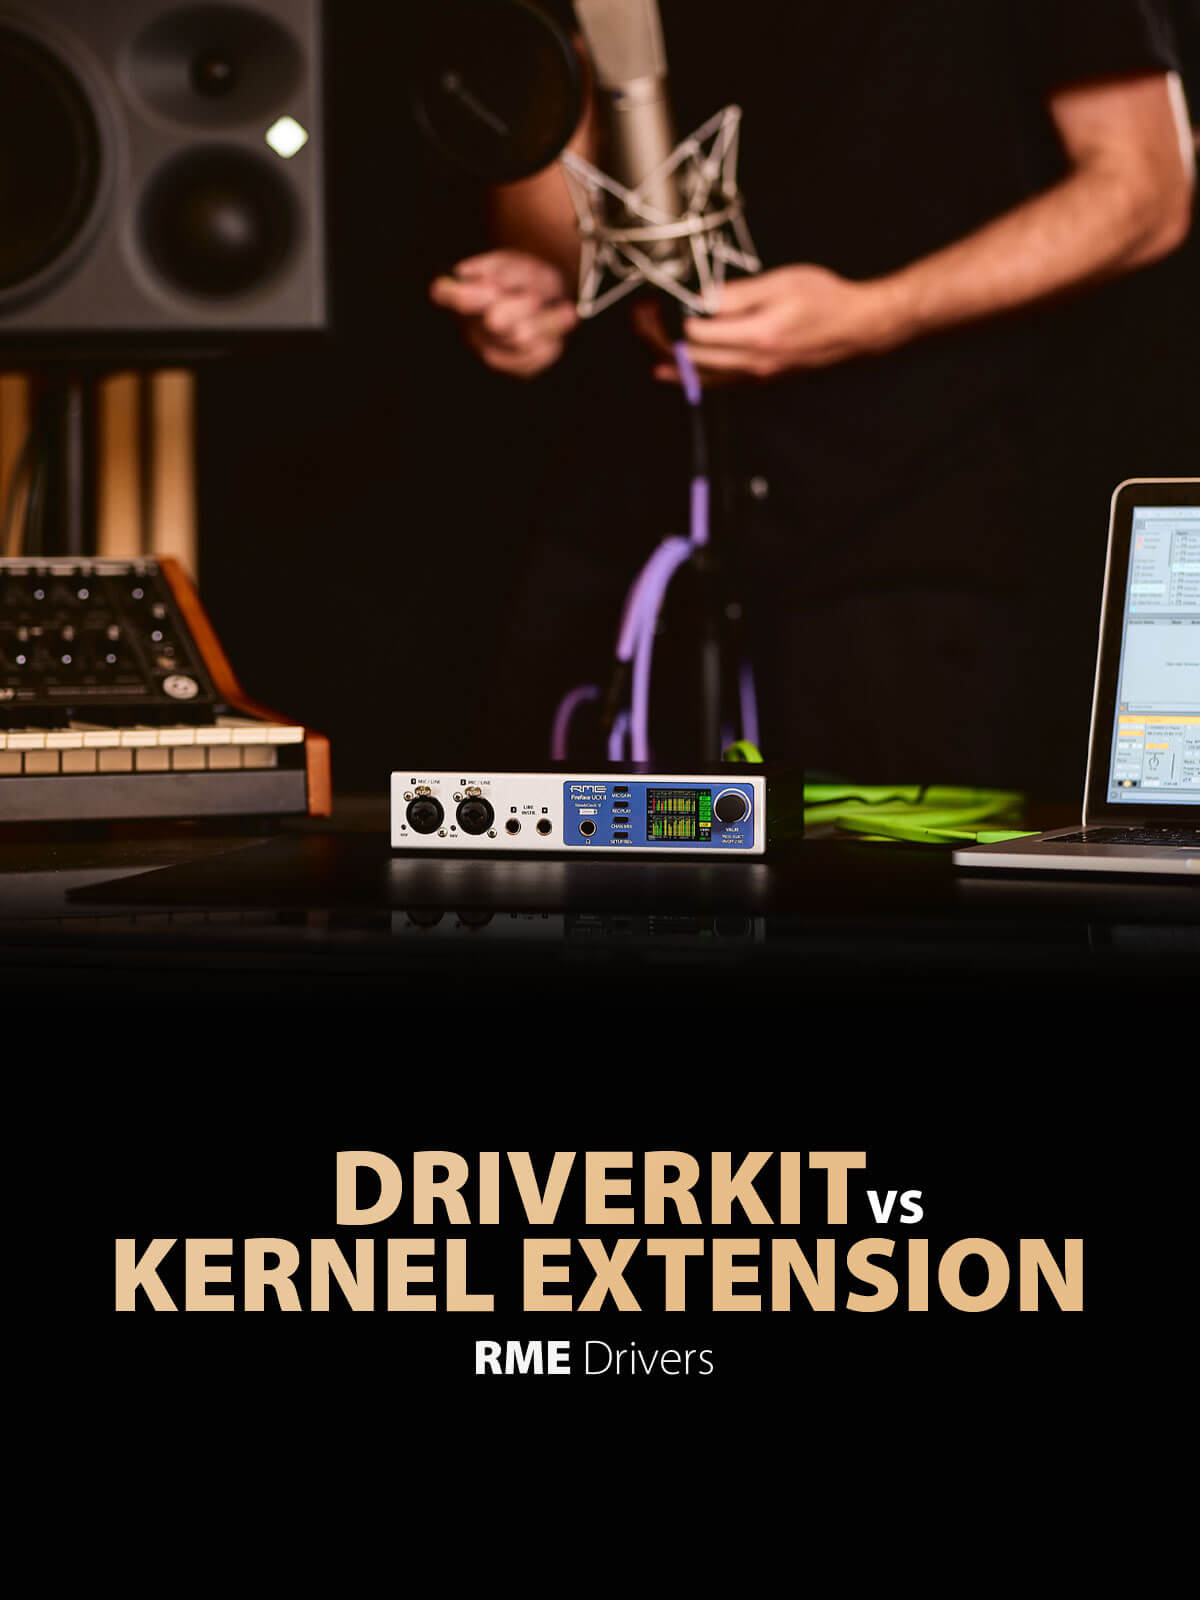 RME Drivers explained - DriverKit vs Kernel Extension